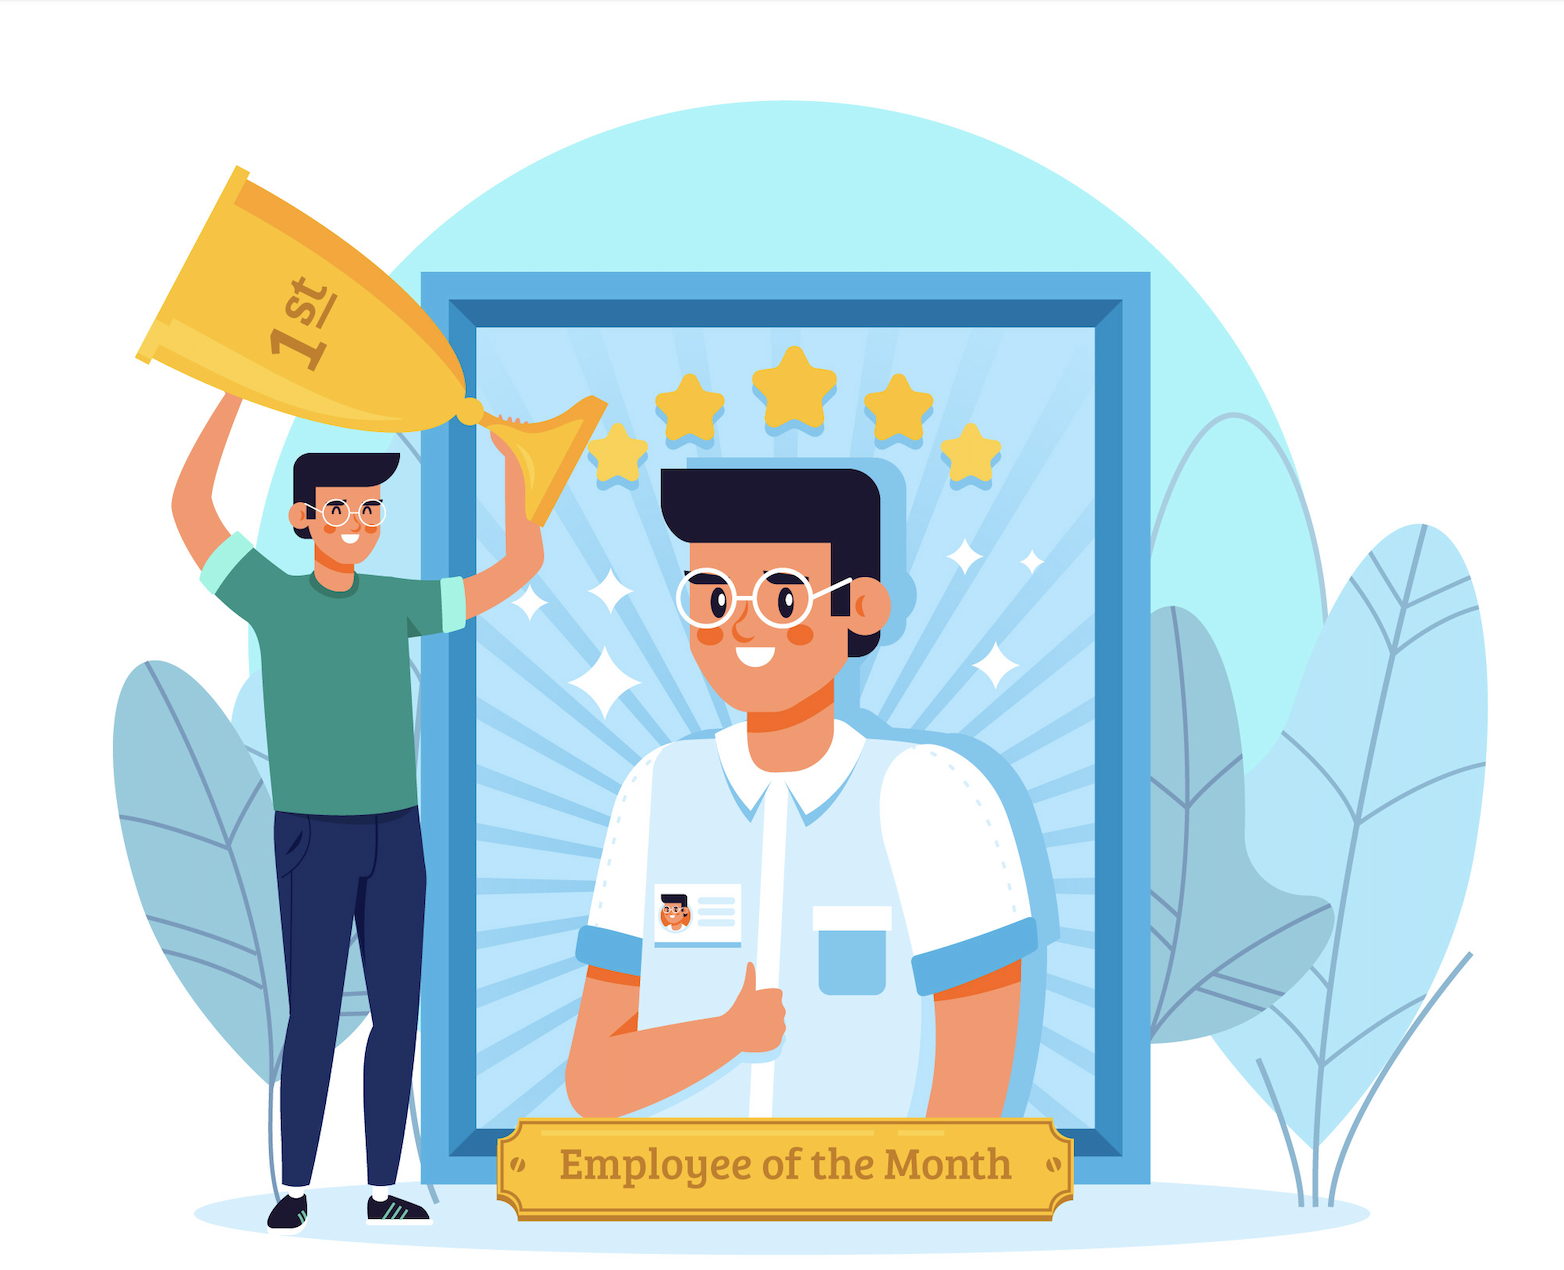 retain employees through rewards